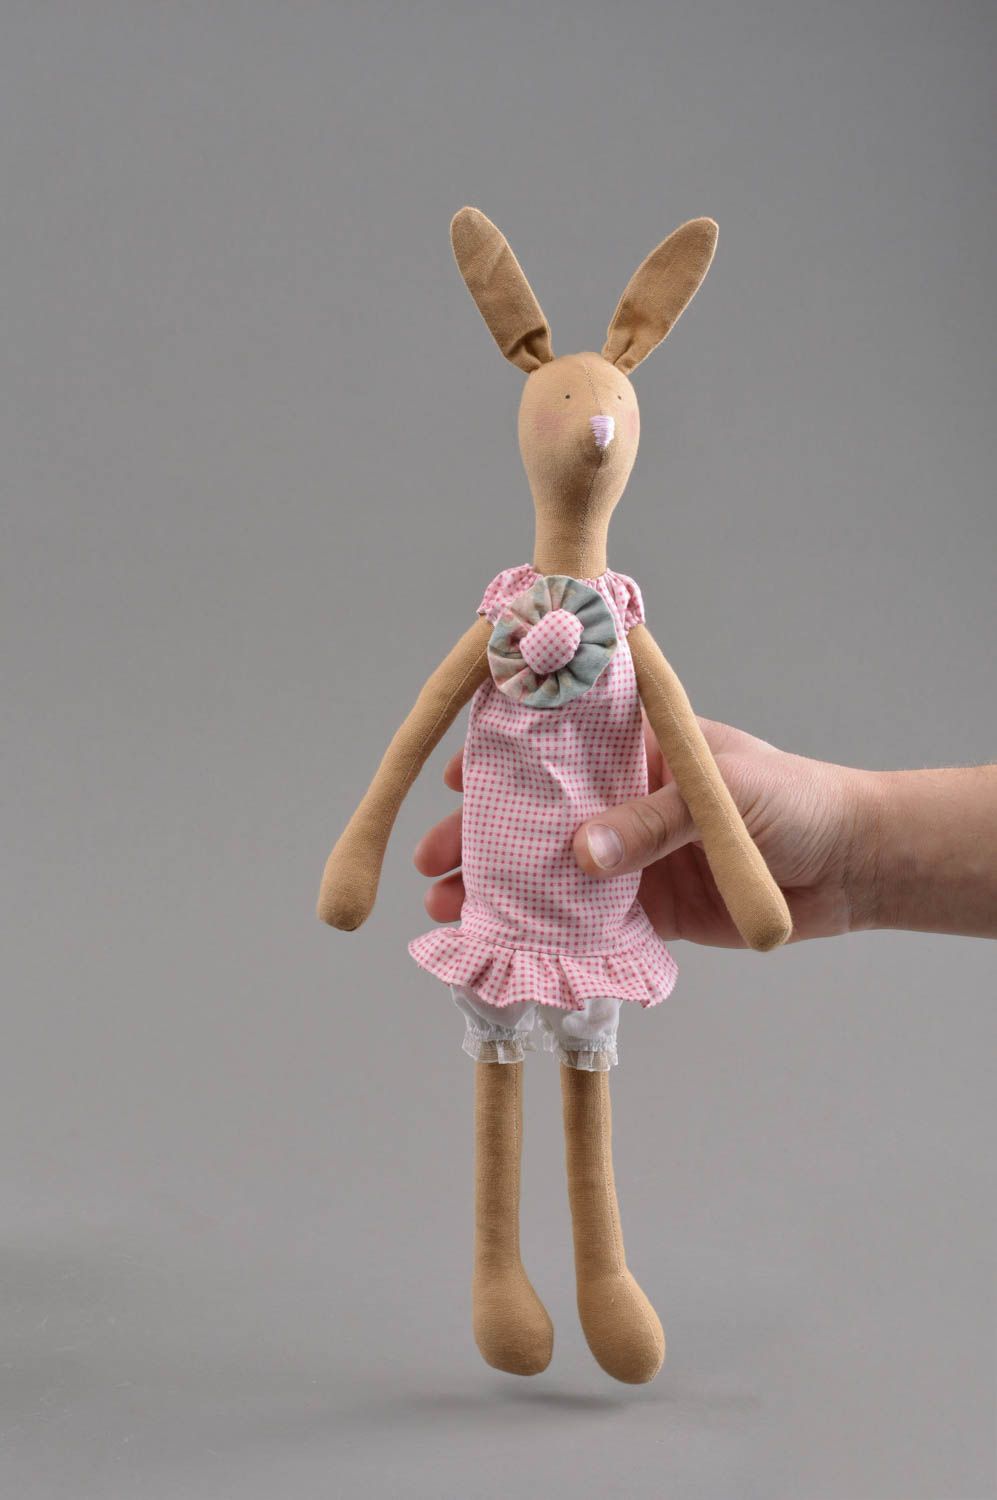 Textil Kuscheltier Hase im Trägerrock weich schön handmade Spielzeug für Kinder foto 4